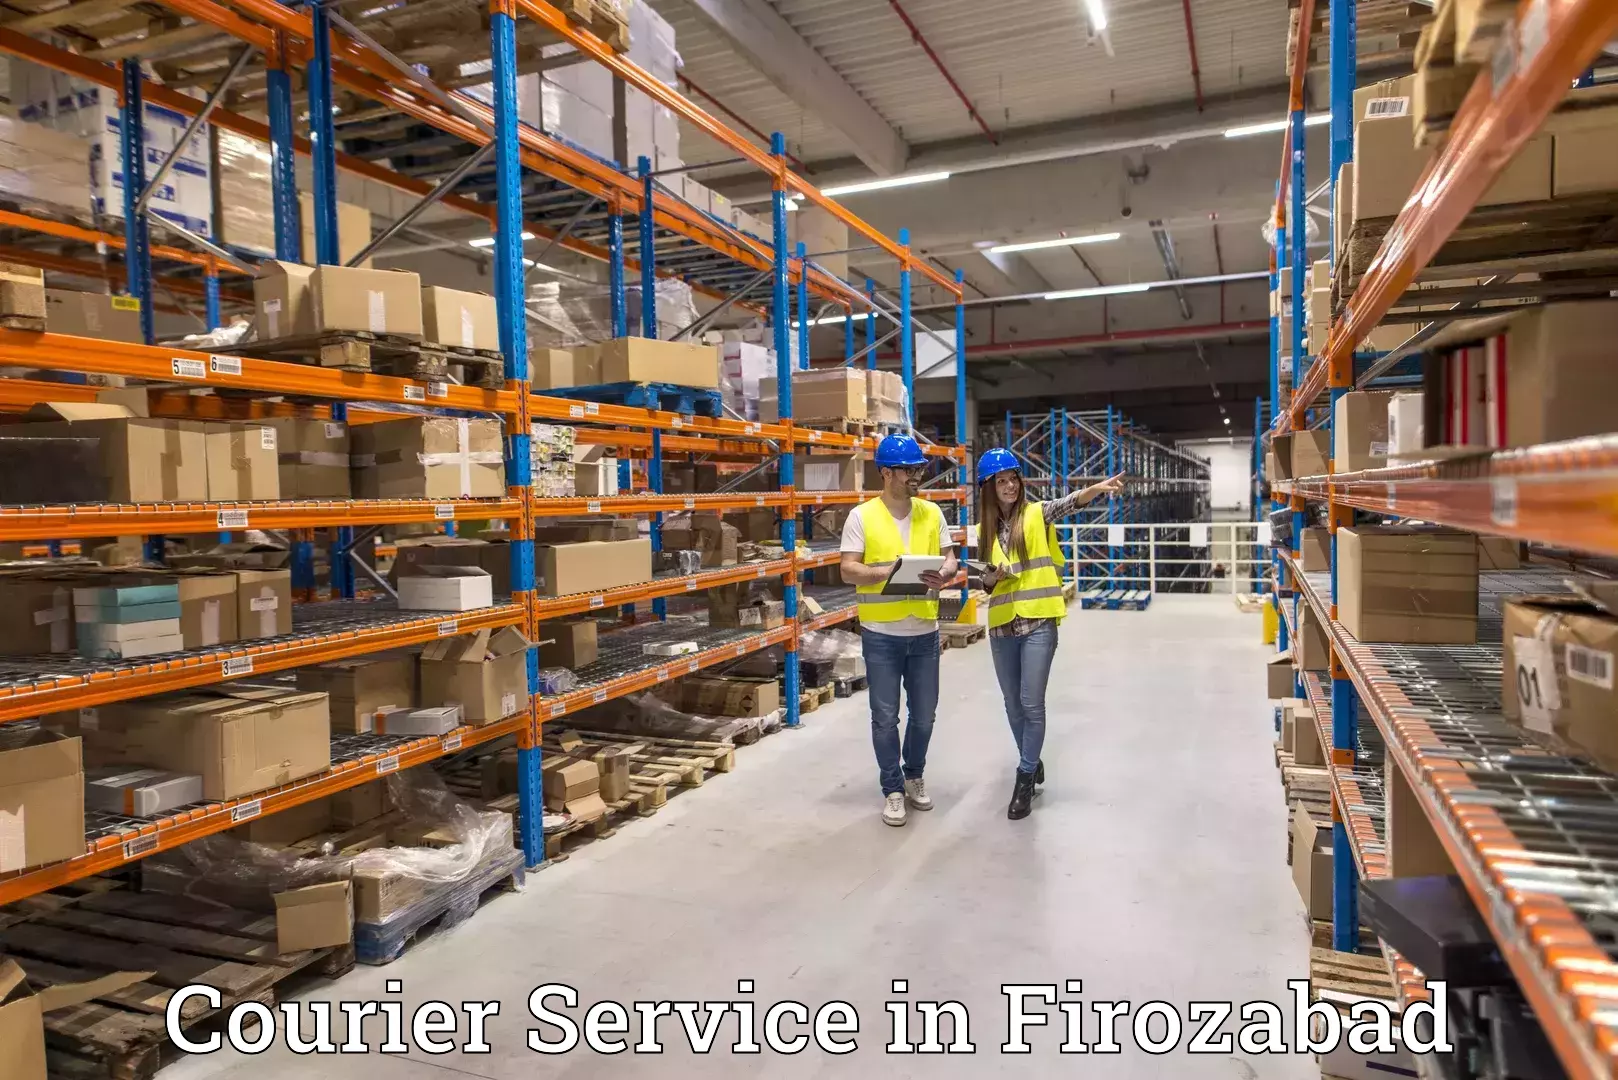 Logistics solutions in Firozabad